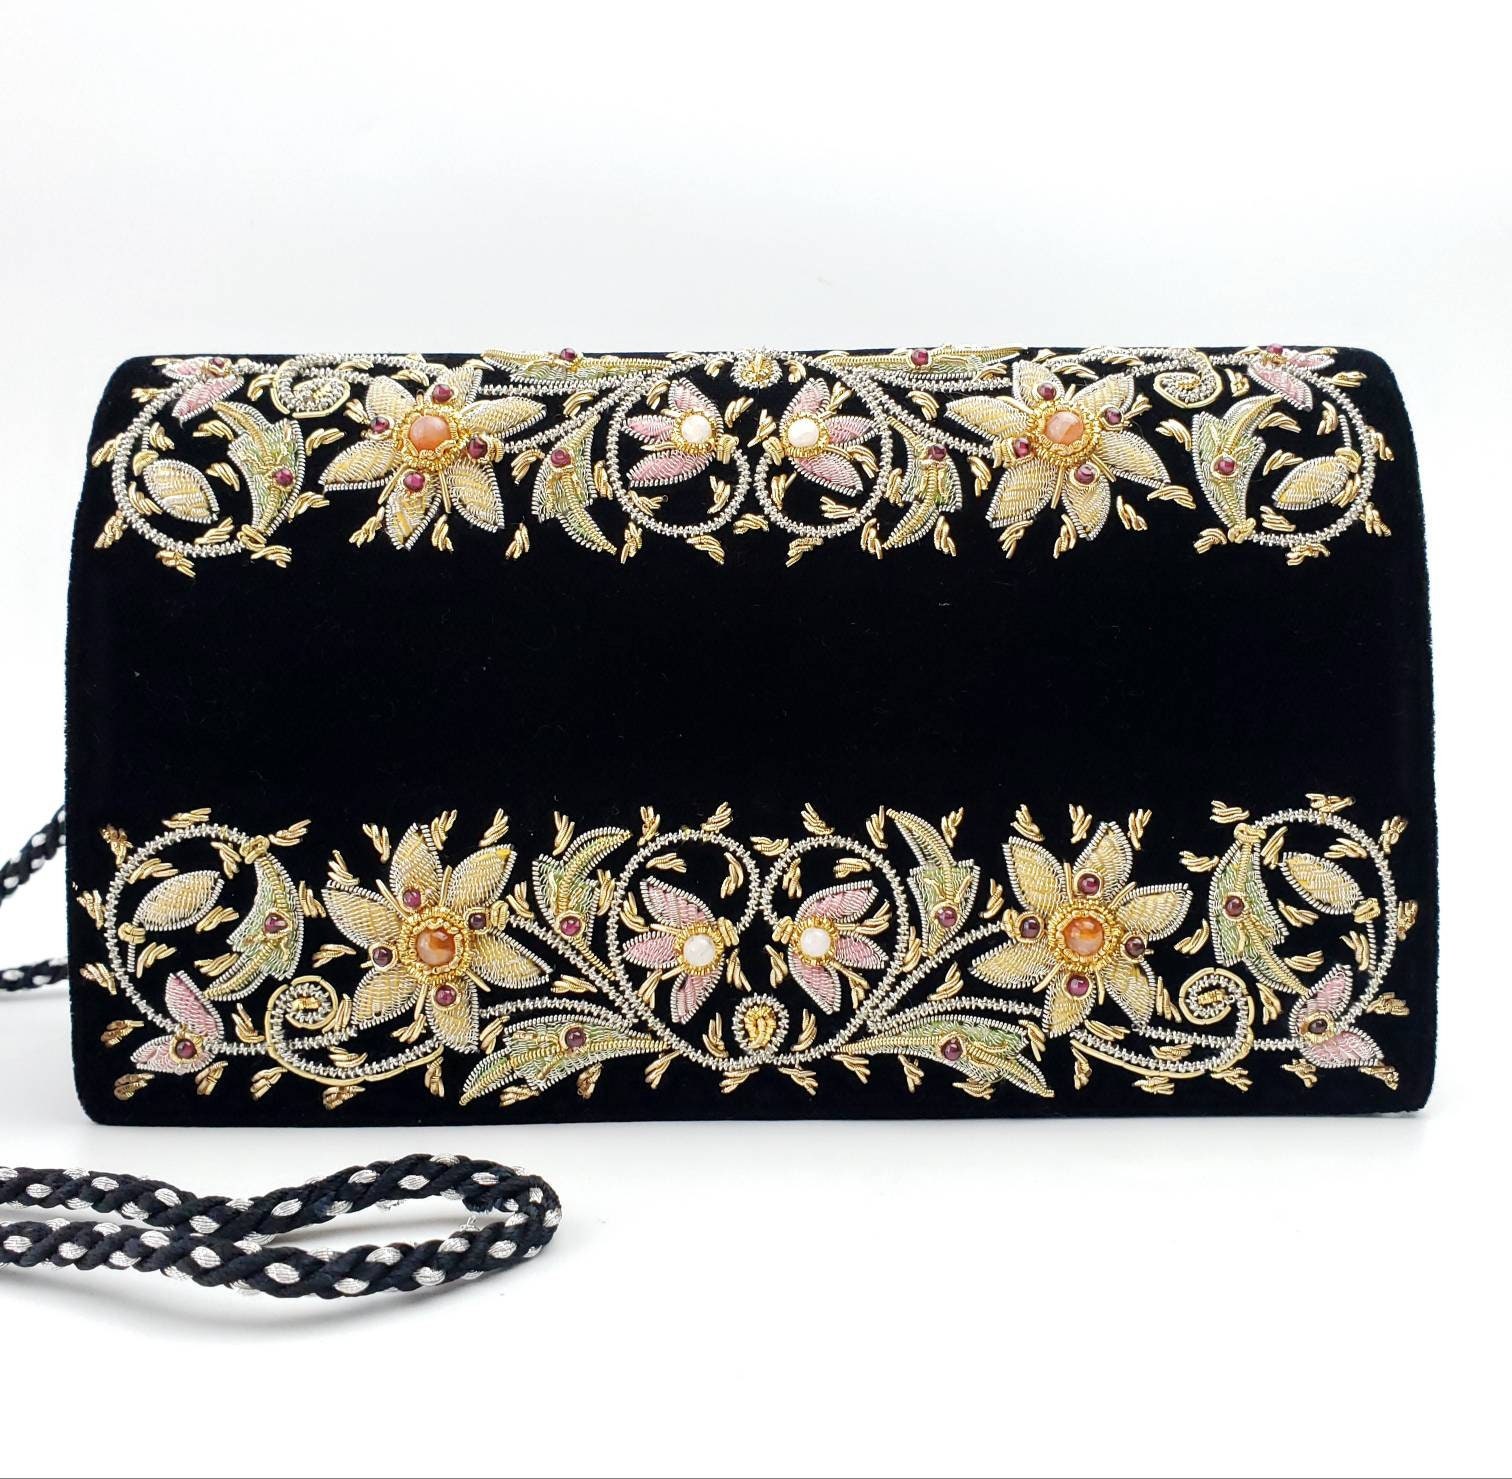 Hand embroidered floral clutch bag, black velvet evening bag with ...